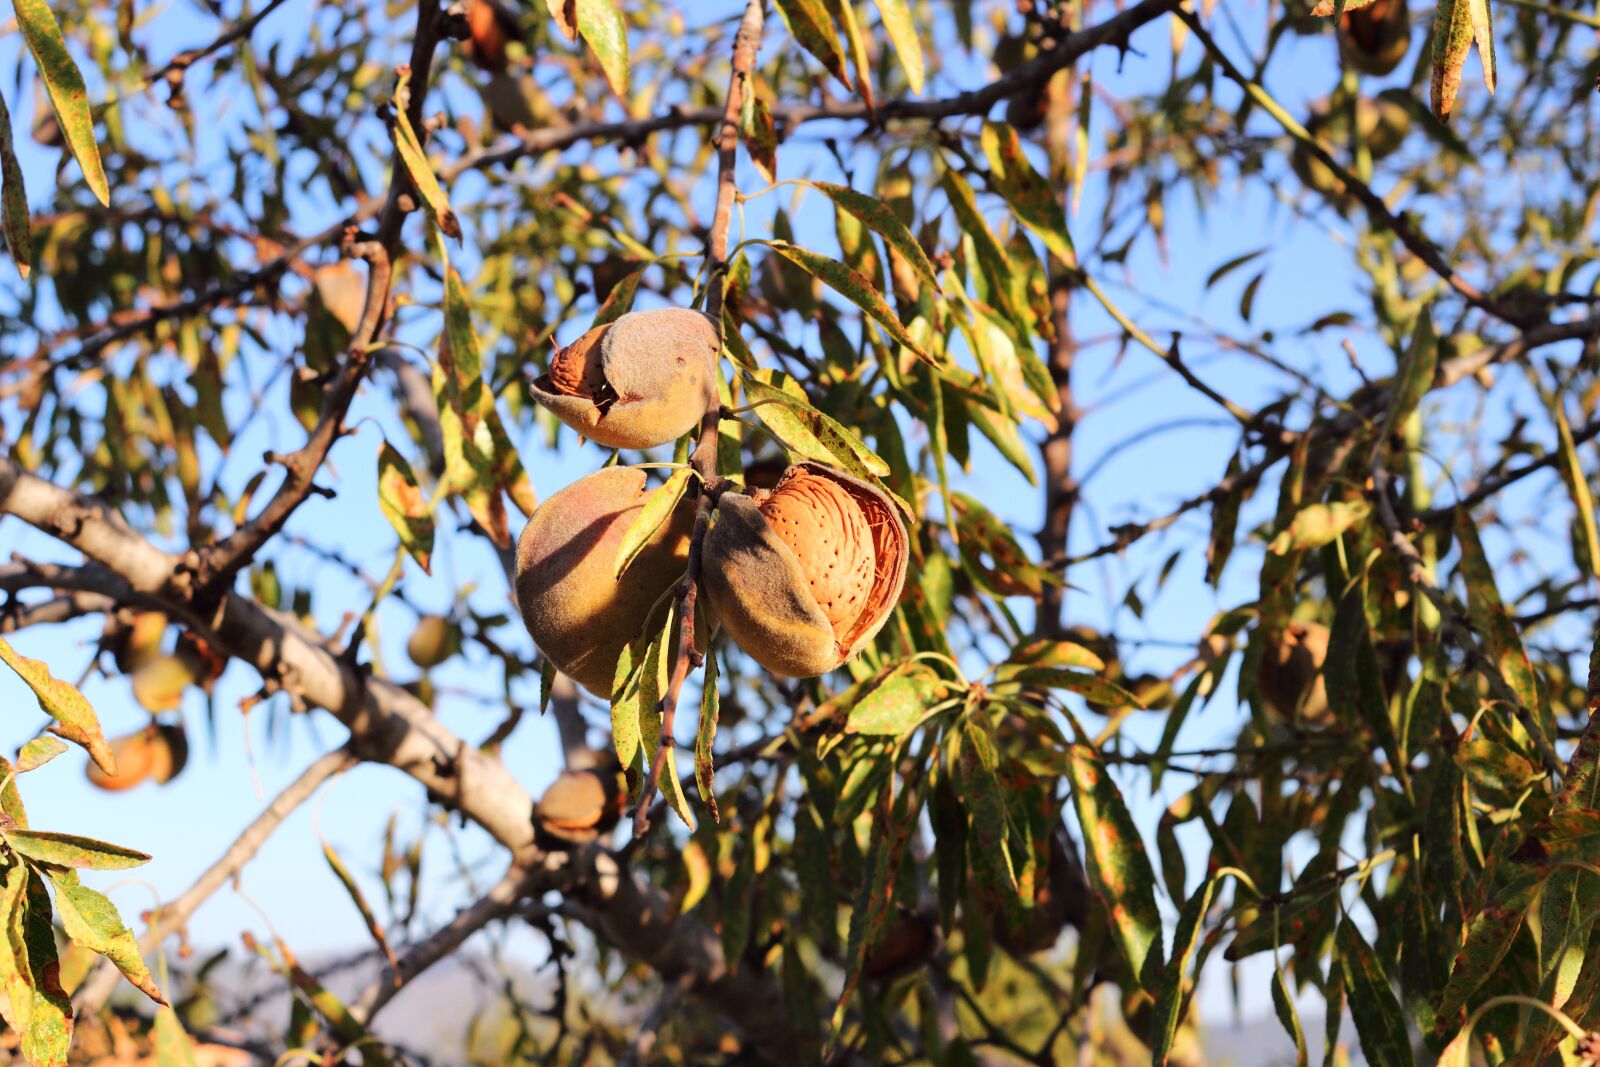 Canon EOS 1200D (EOS Rebel T5 / EOS Kiss X70 / EOS Hi) sample photo. Almond, tree, almond tree photography